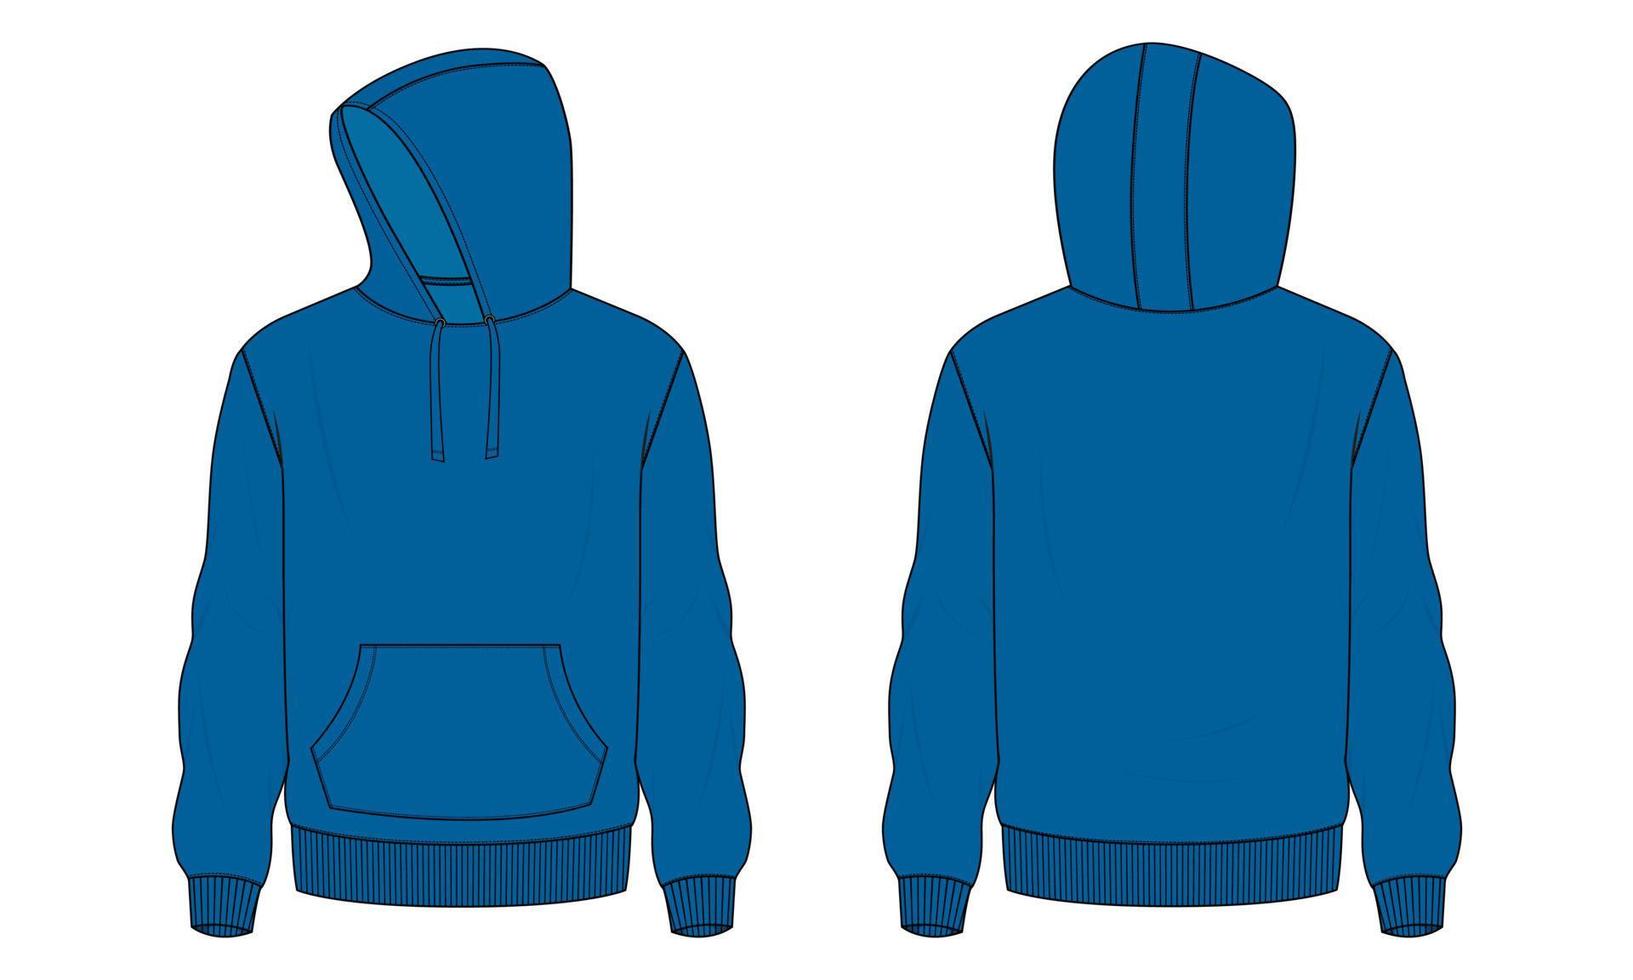 lange mouw hoodie vector illustratie blauwe kleur sjabloon.